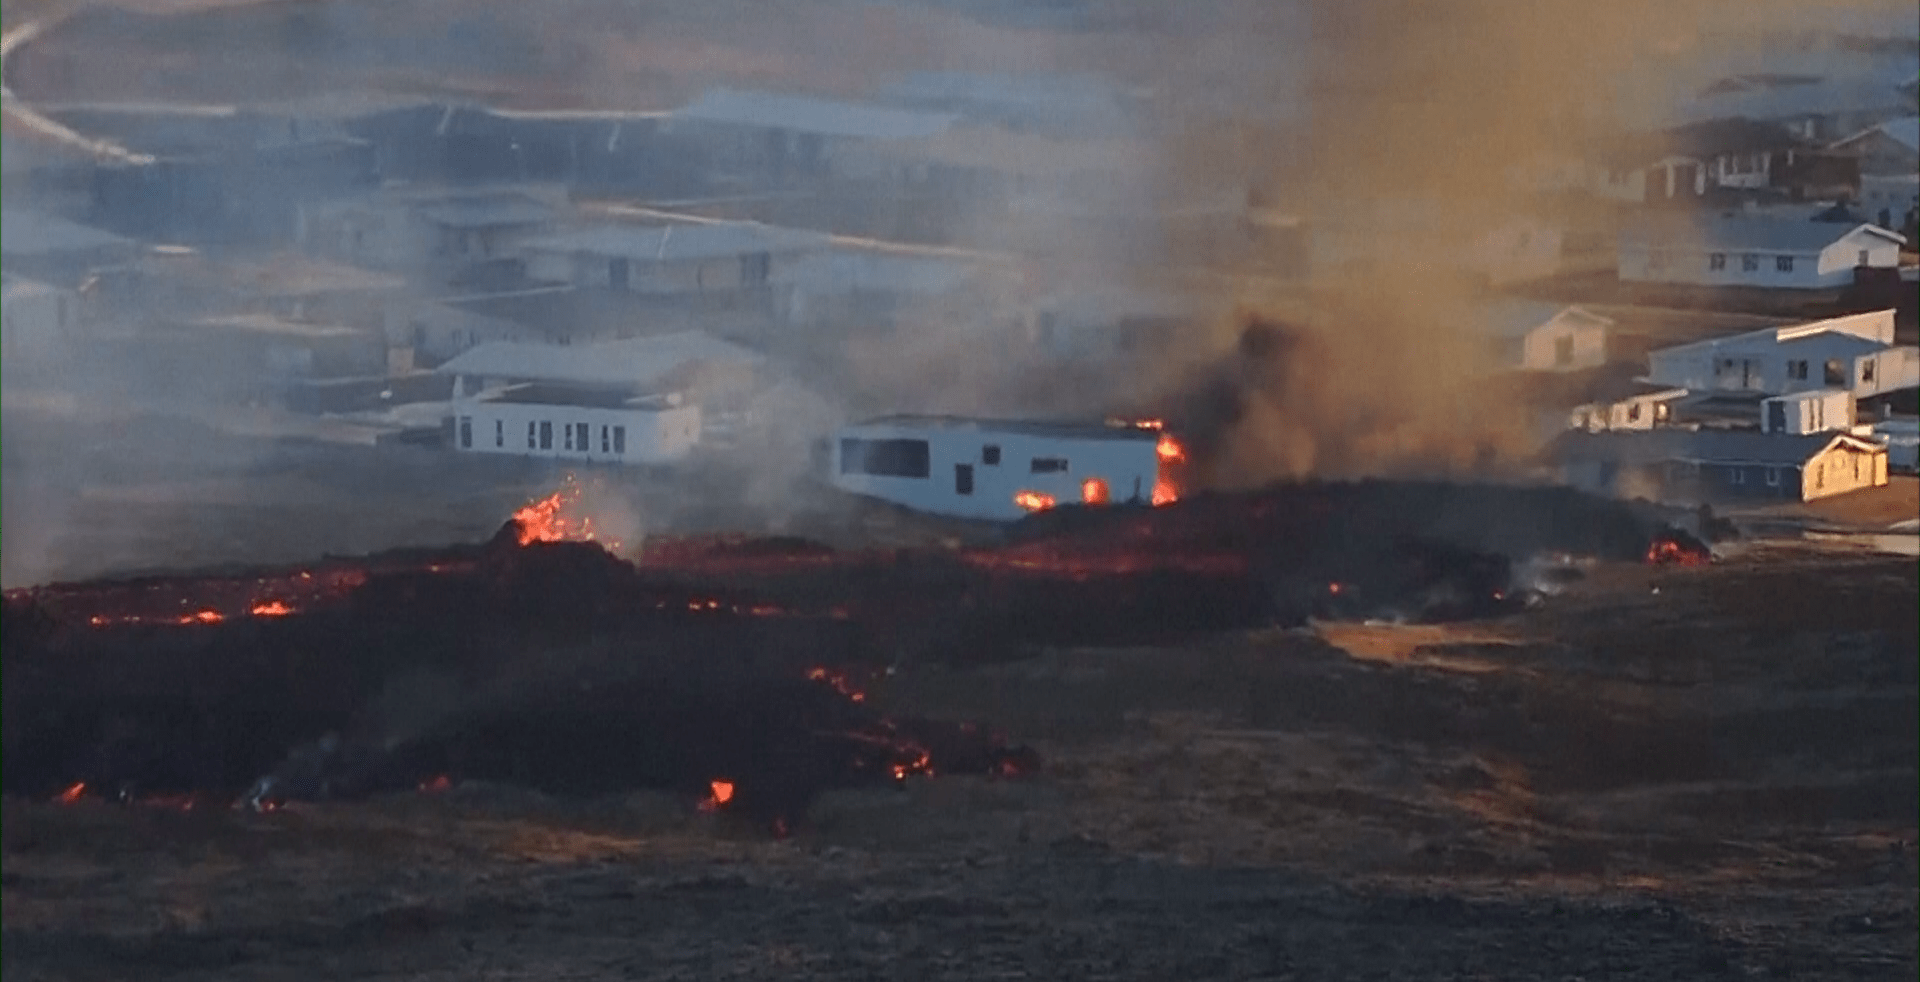 Proud lávy na Islandu dosáhl města Grindavík, některé domy hoří